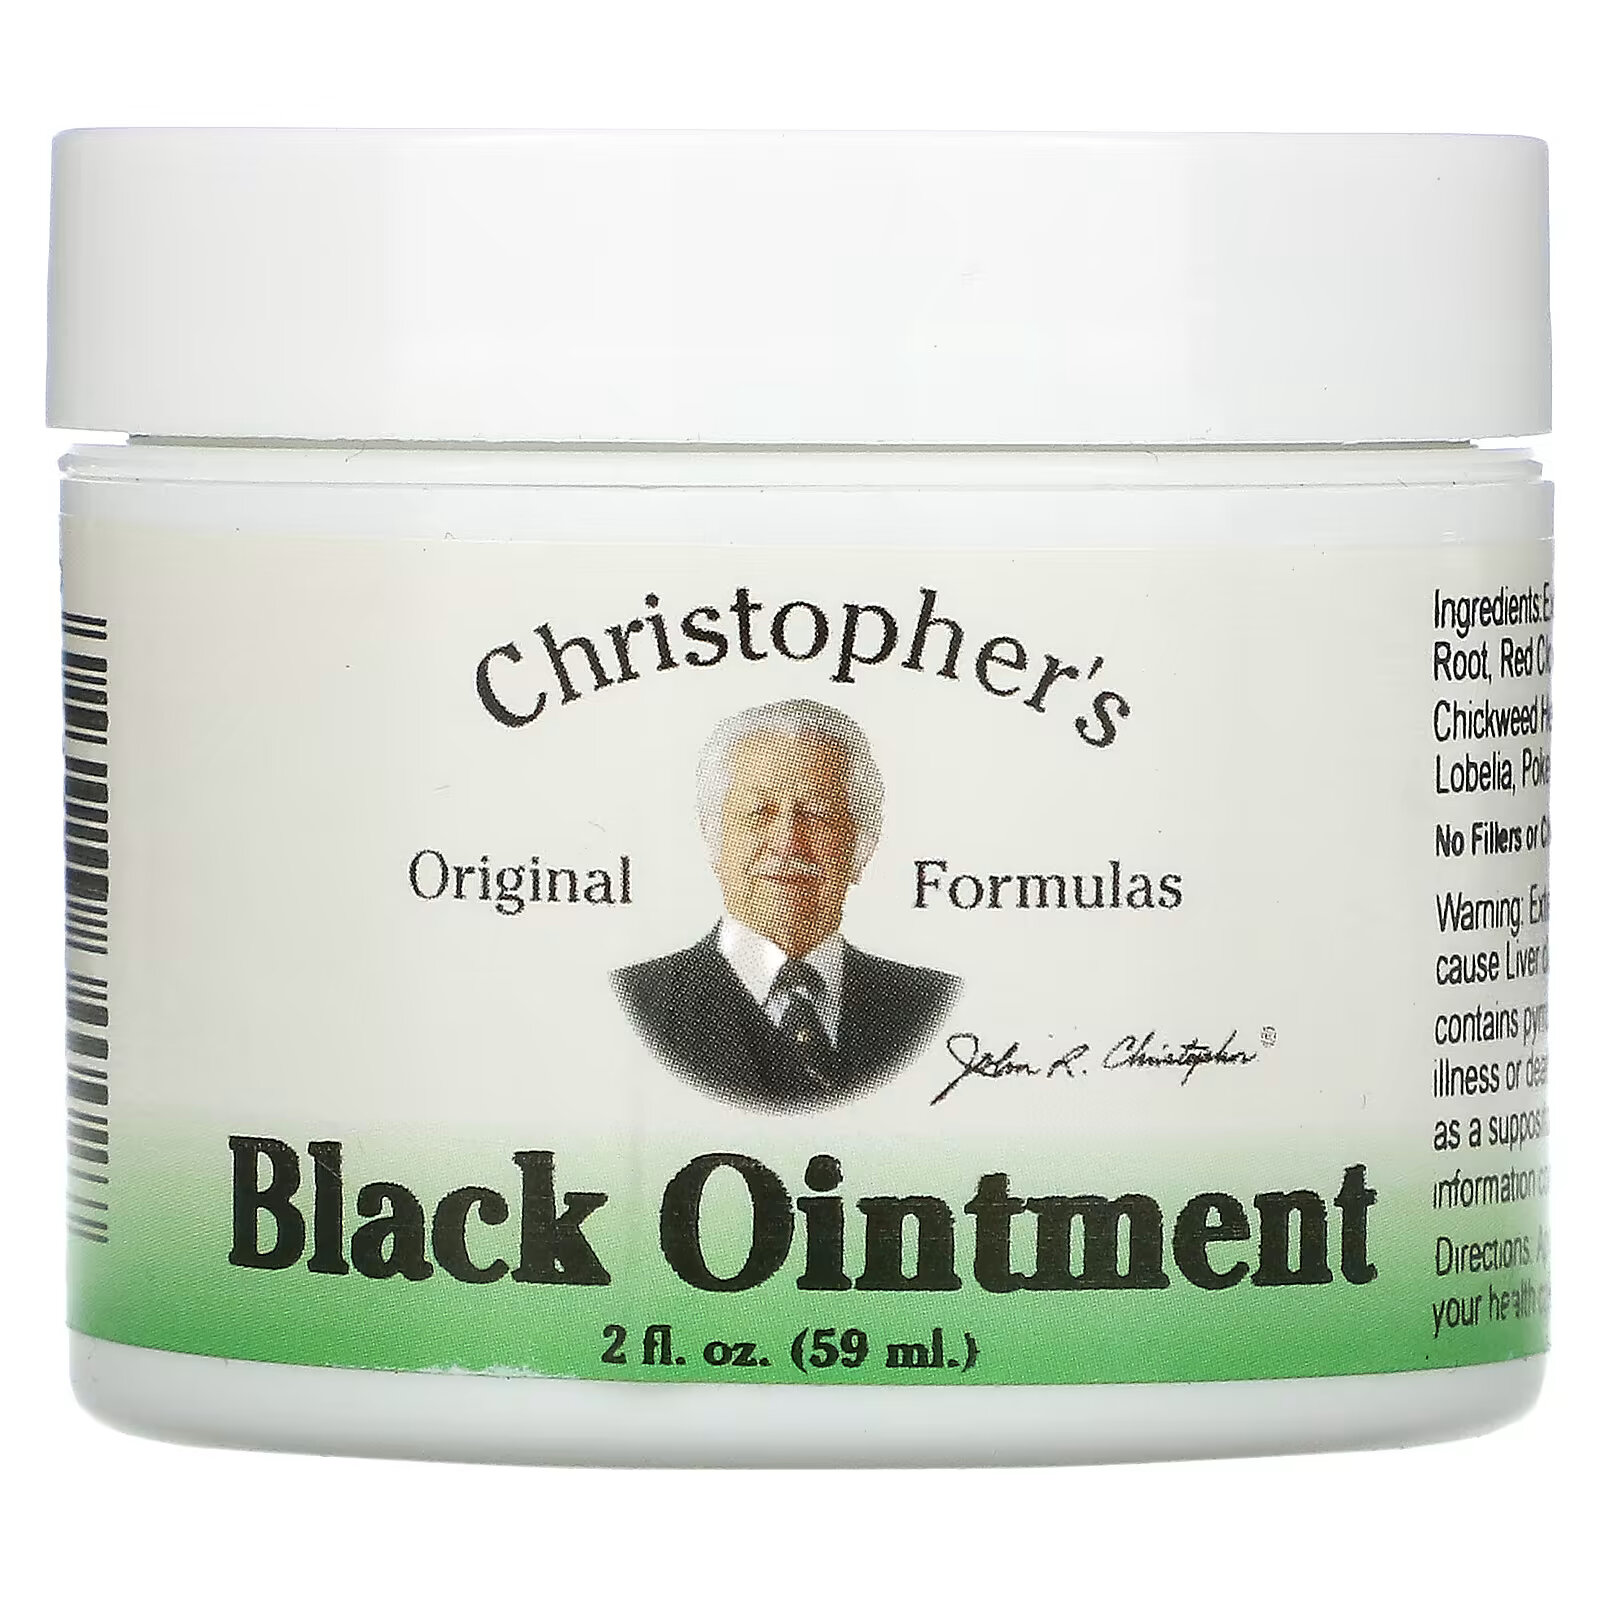 Christopher's Original Formulas, Black Ointment, противовоспалительная, 59 мл (2 жидкие унции) christopher s original formulas экстракт эхинацеи глицериновая основа 2 жидкие унции 59 мл